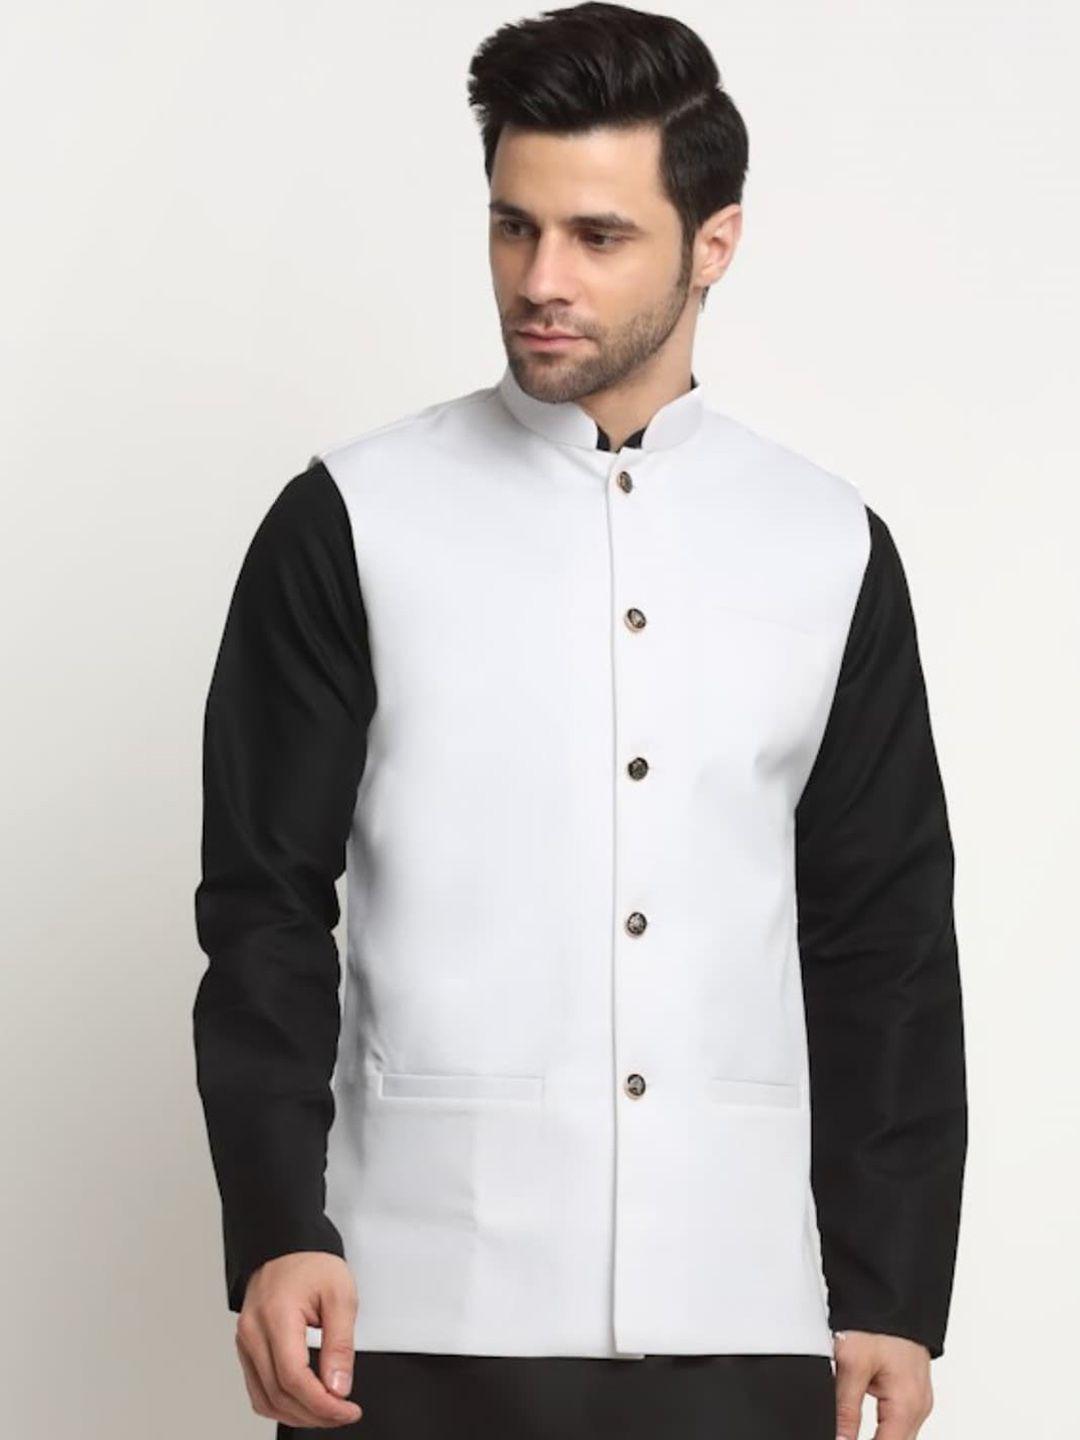 kraft-india-cotton-nehru-jackets